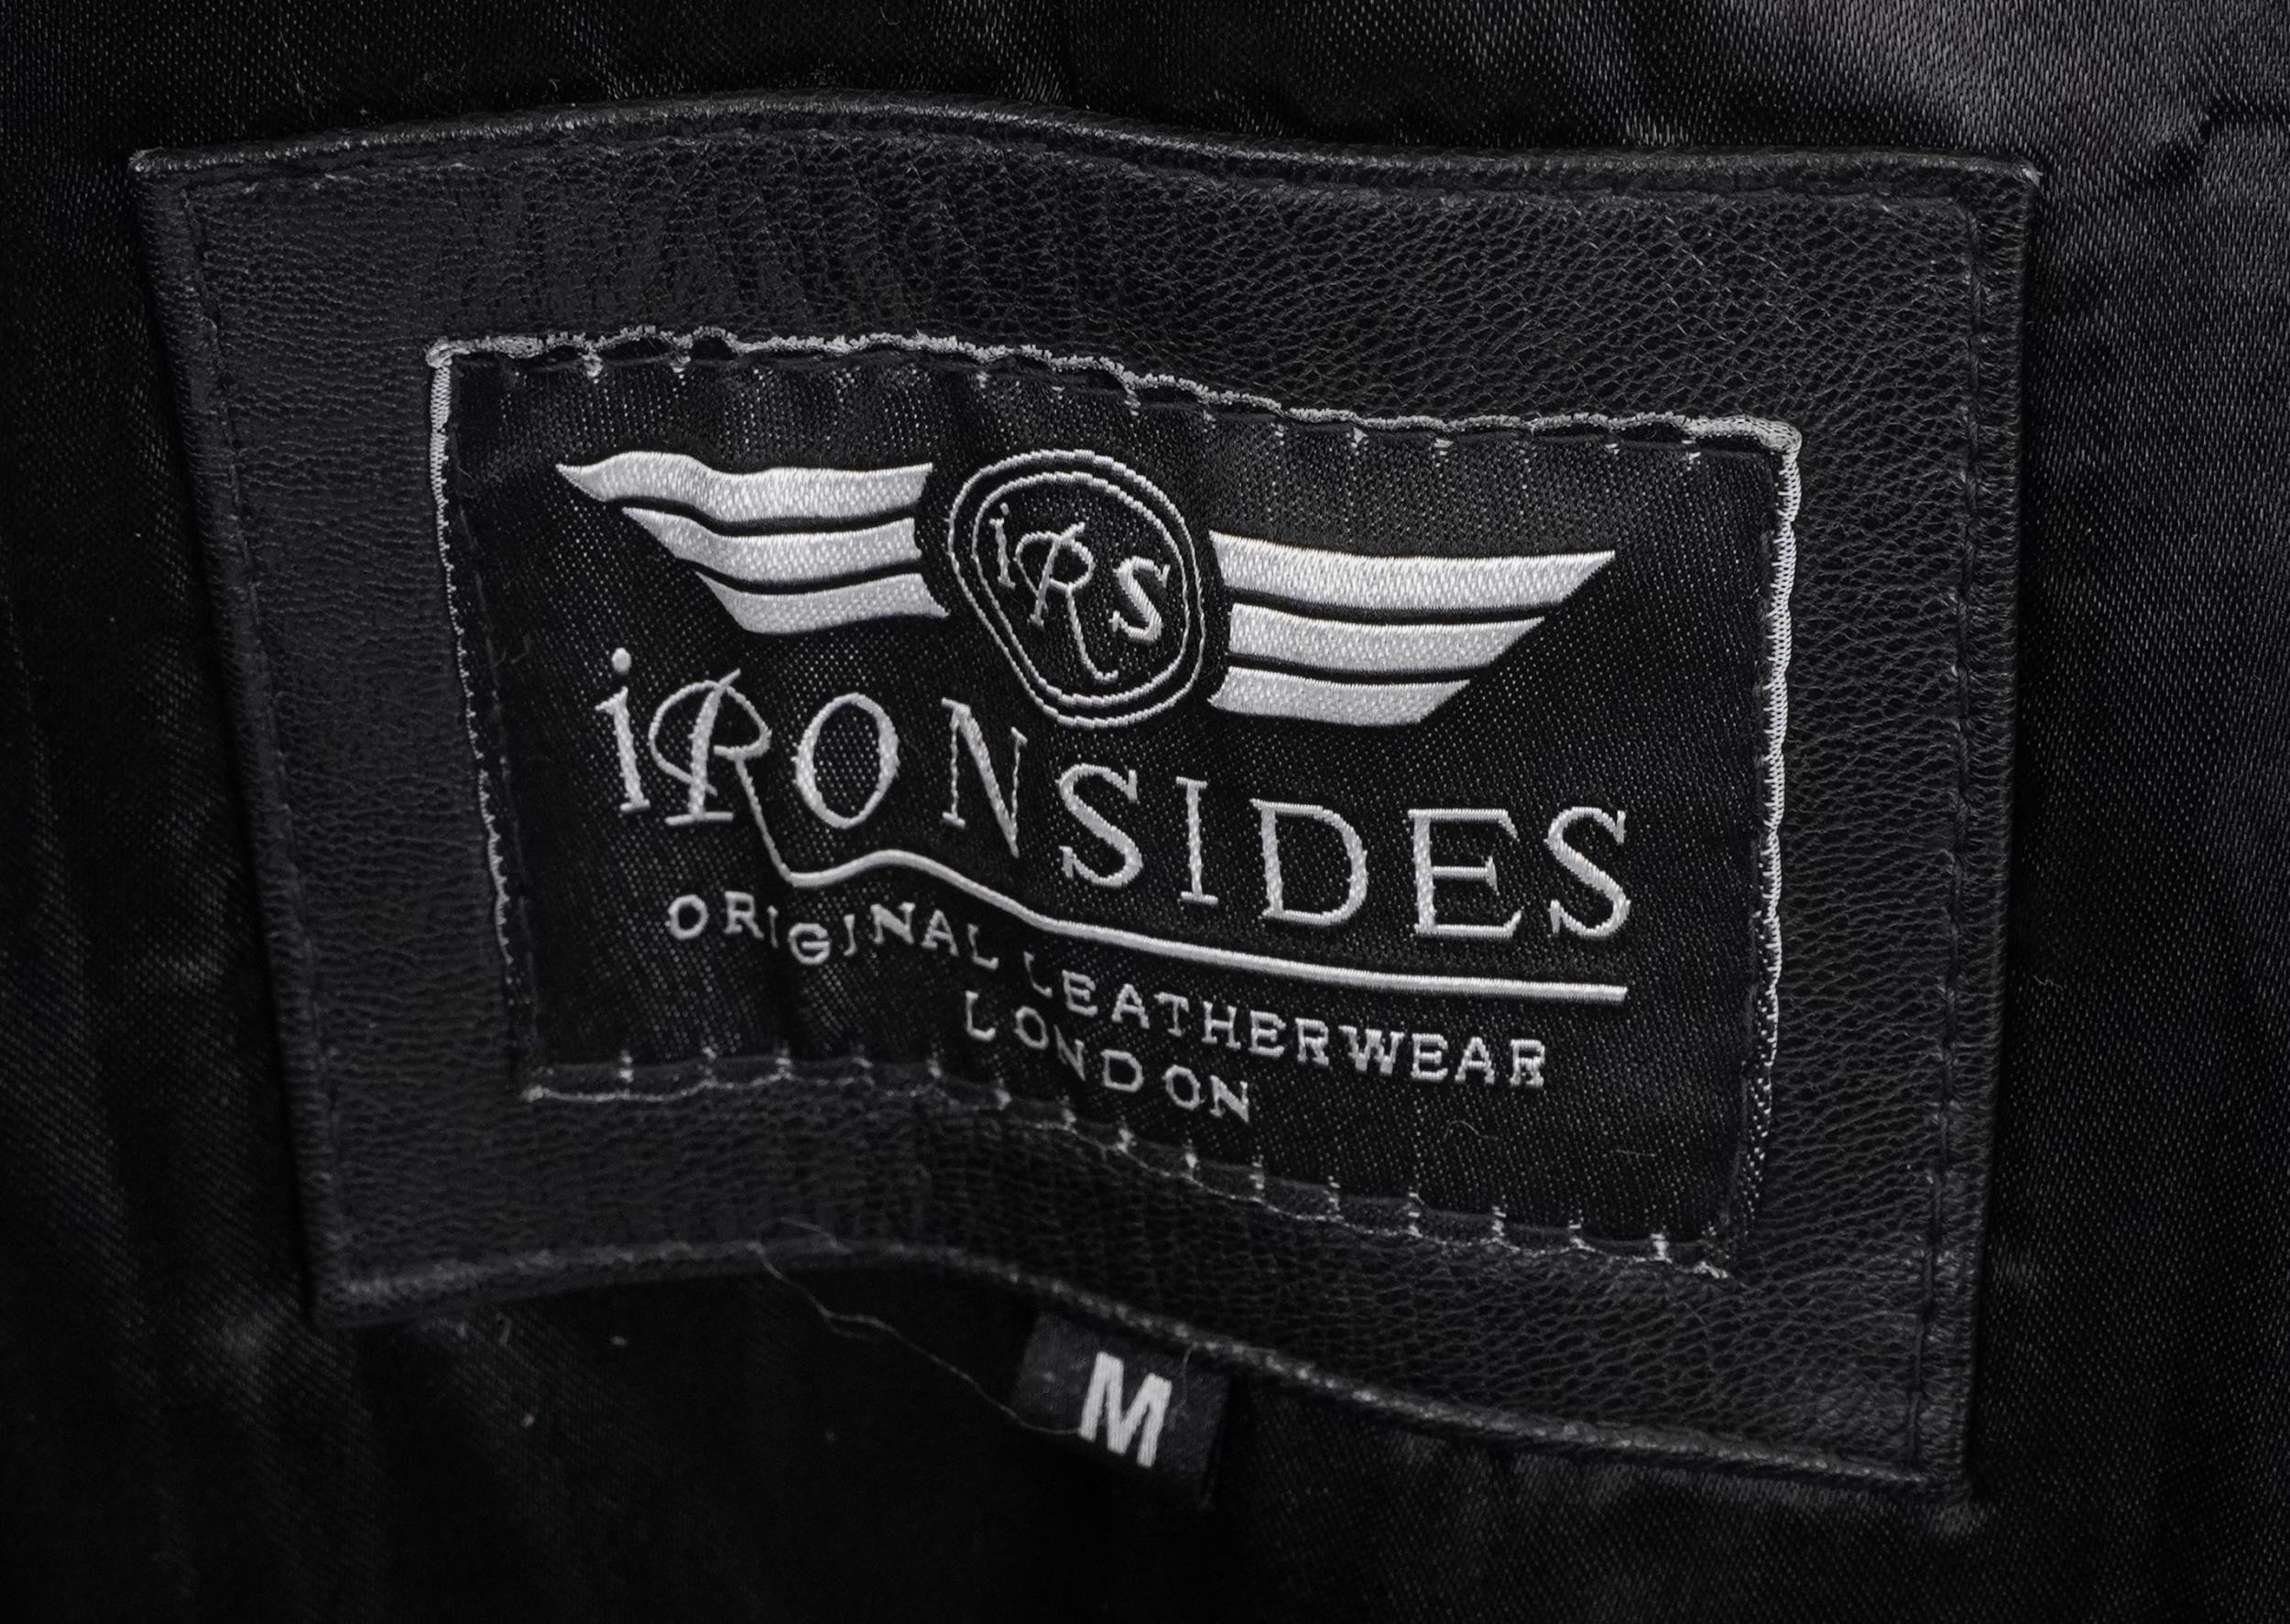 Gentlemen's Ironsides leather coat, size Medium - Image 2 of 3